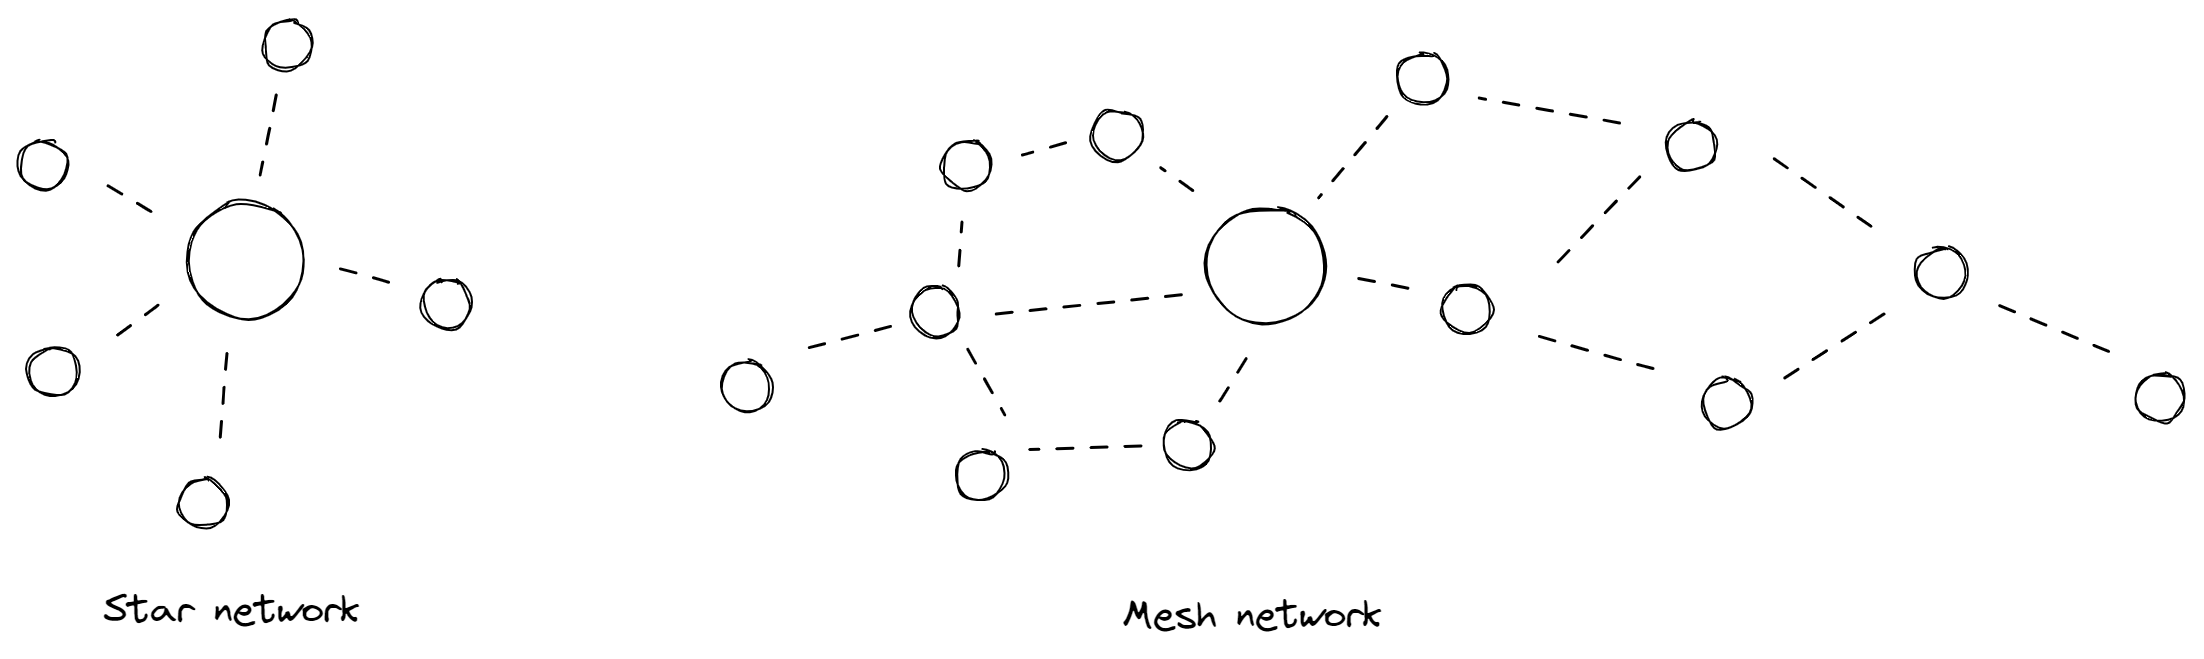 Topologies de réseau IoT : réseau en étoile vs réseau maillé